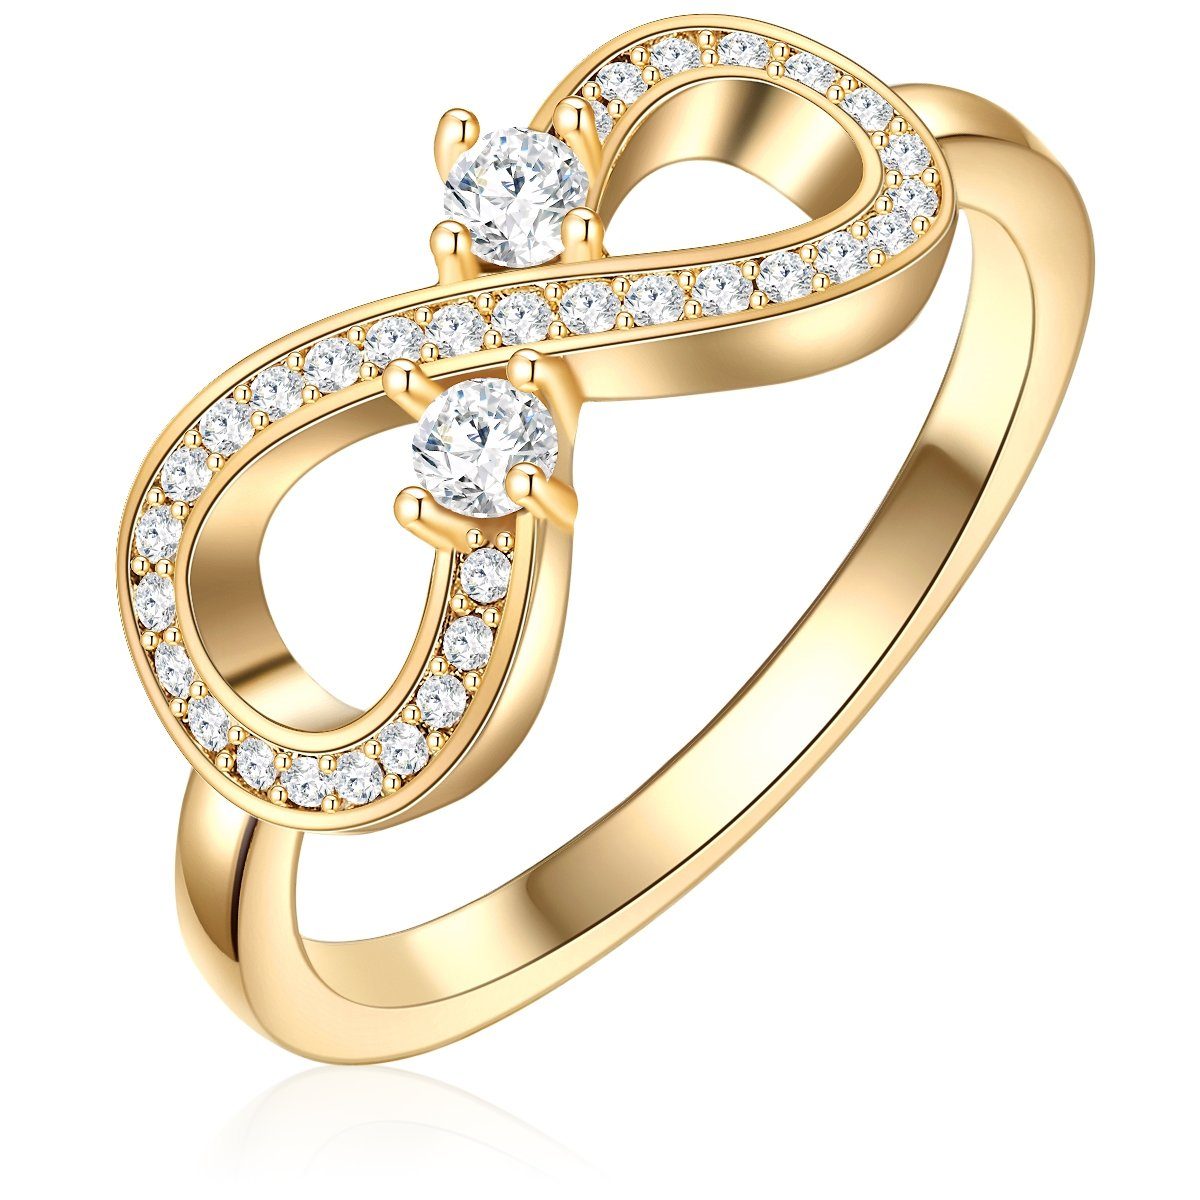 Lulu & Jane Fingerring Ring gelbgold verziert mit Kristallen von Swarovski® weiß